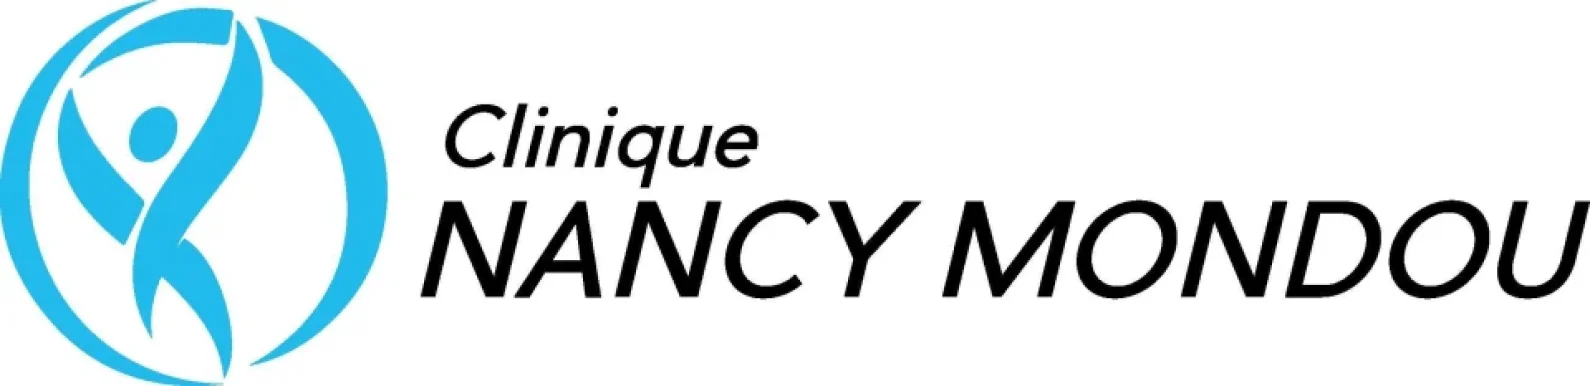 Clinique Nancy Mondou, Quebec - 